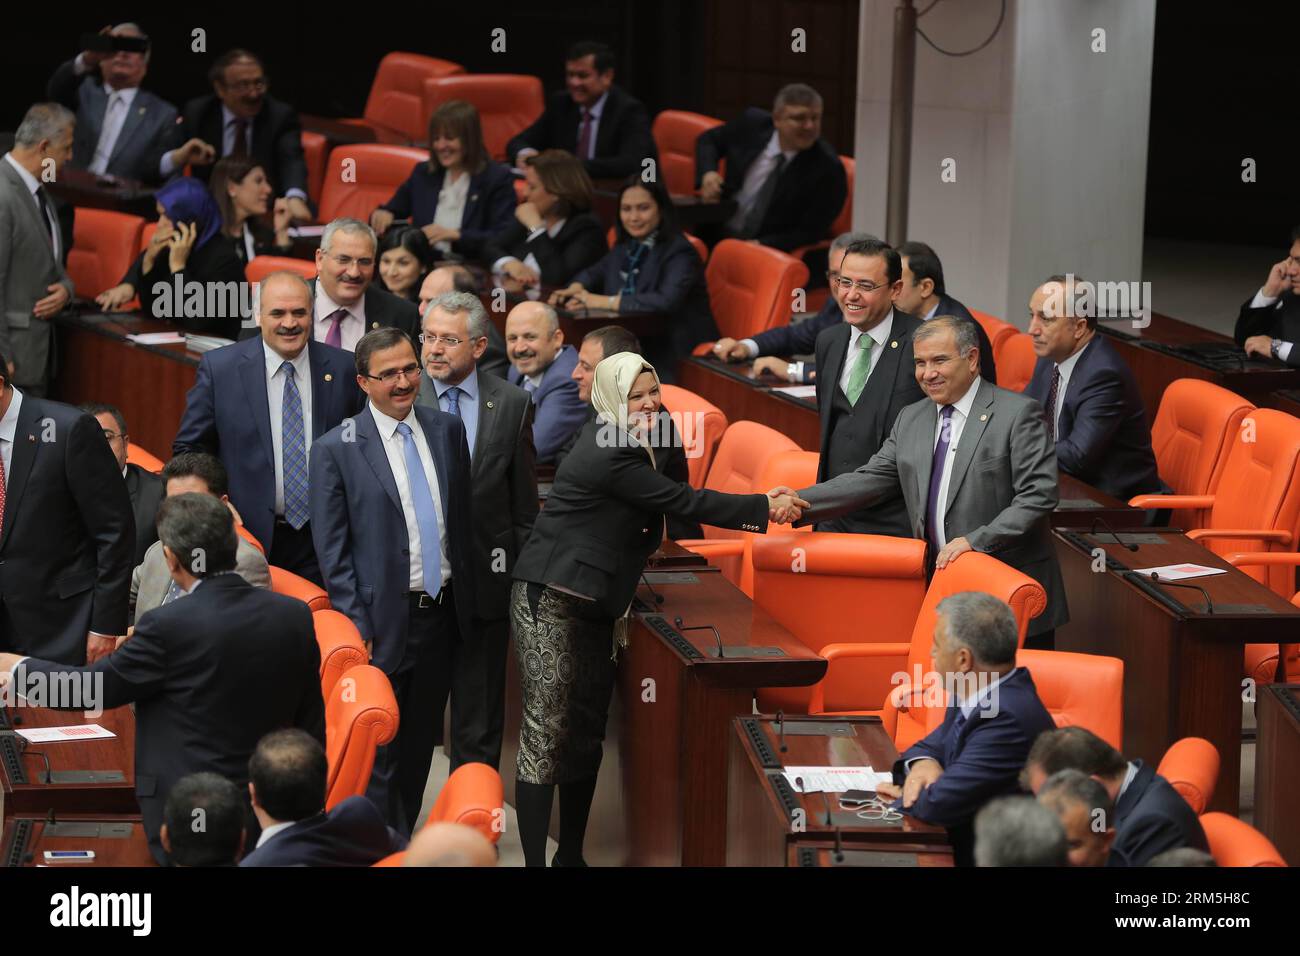 Bildnummer : 60661047 Datum : 31.10.2013 Copyright : imago/Xinhua (131031) -- ANKARA, 31 oct. 2013 (Xinhua) -- Une latrice turque portant le foulard serre la main de ses collègues au Parlement turc à Ankara, Turquie, le 31 octobre 2013. Quatre législateurs du gouvernement turc à racines islamiques ont assisté jeudi au Parlement en portant le foulard pour la première fois, brisant un long tabou du port du foulard en Turquie. (Xinhua/Mustafa Kaya) TURQUIE-ANKARA-TABOO-FOULARD-BREAK PUBLICATIONxNOTxINxCHN Politik Parlament Frauen Kopftuch religion Islam premiumd x0x xmb 2013 quer 60661047 Banque D'Images